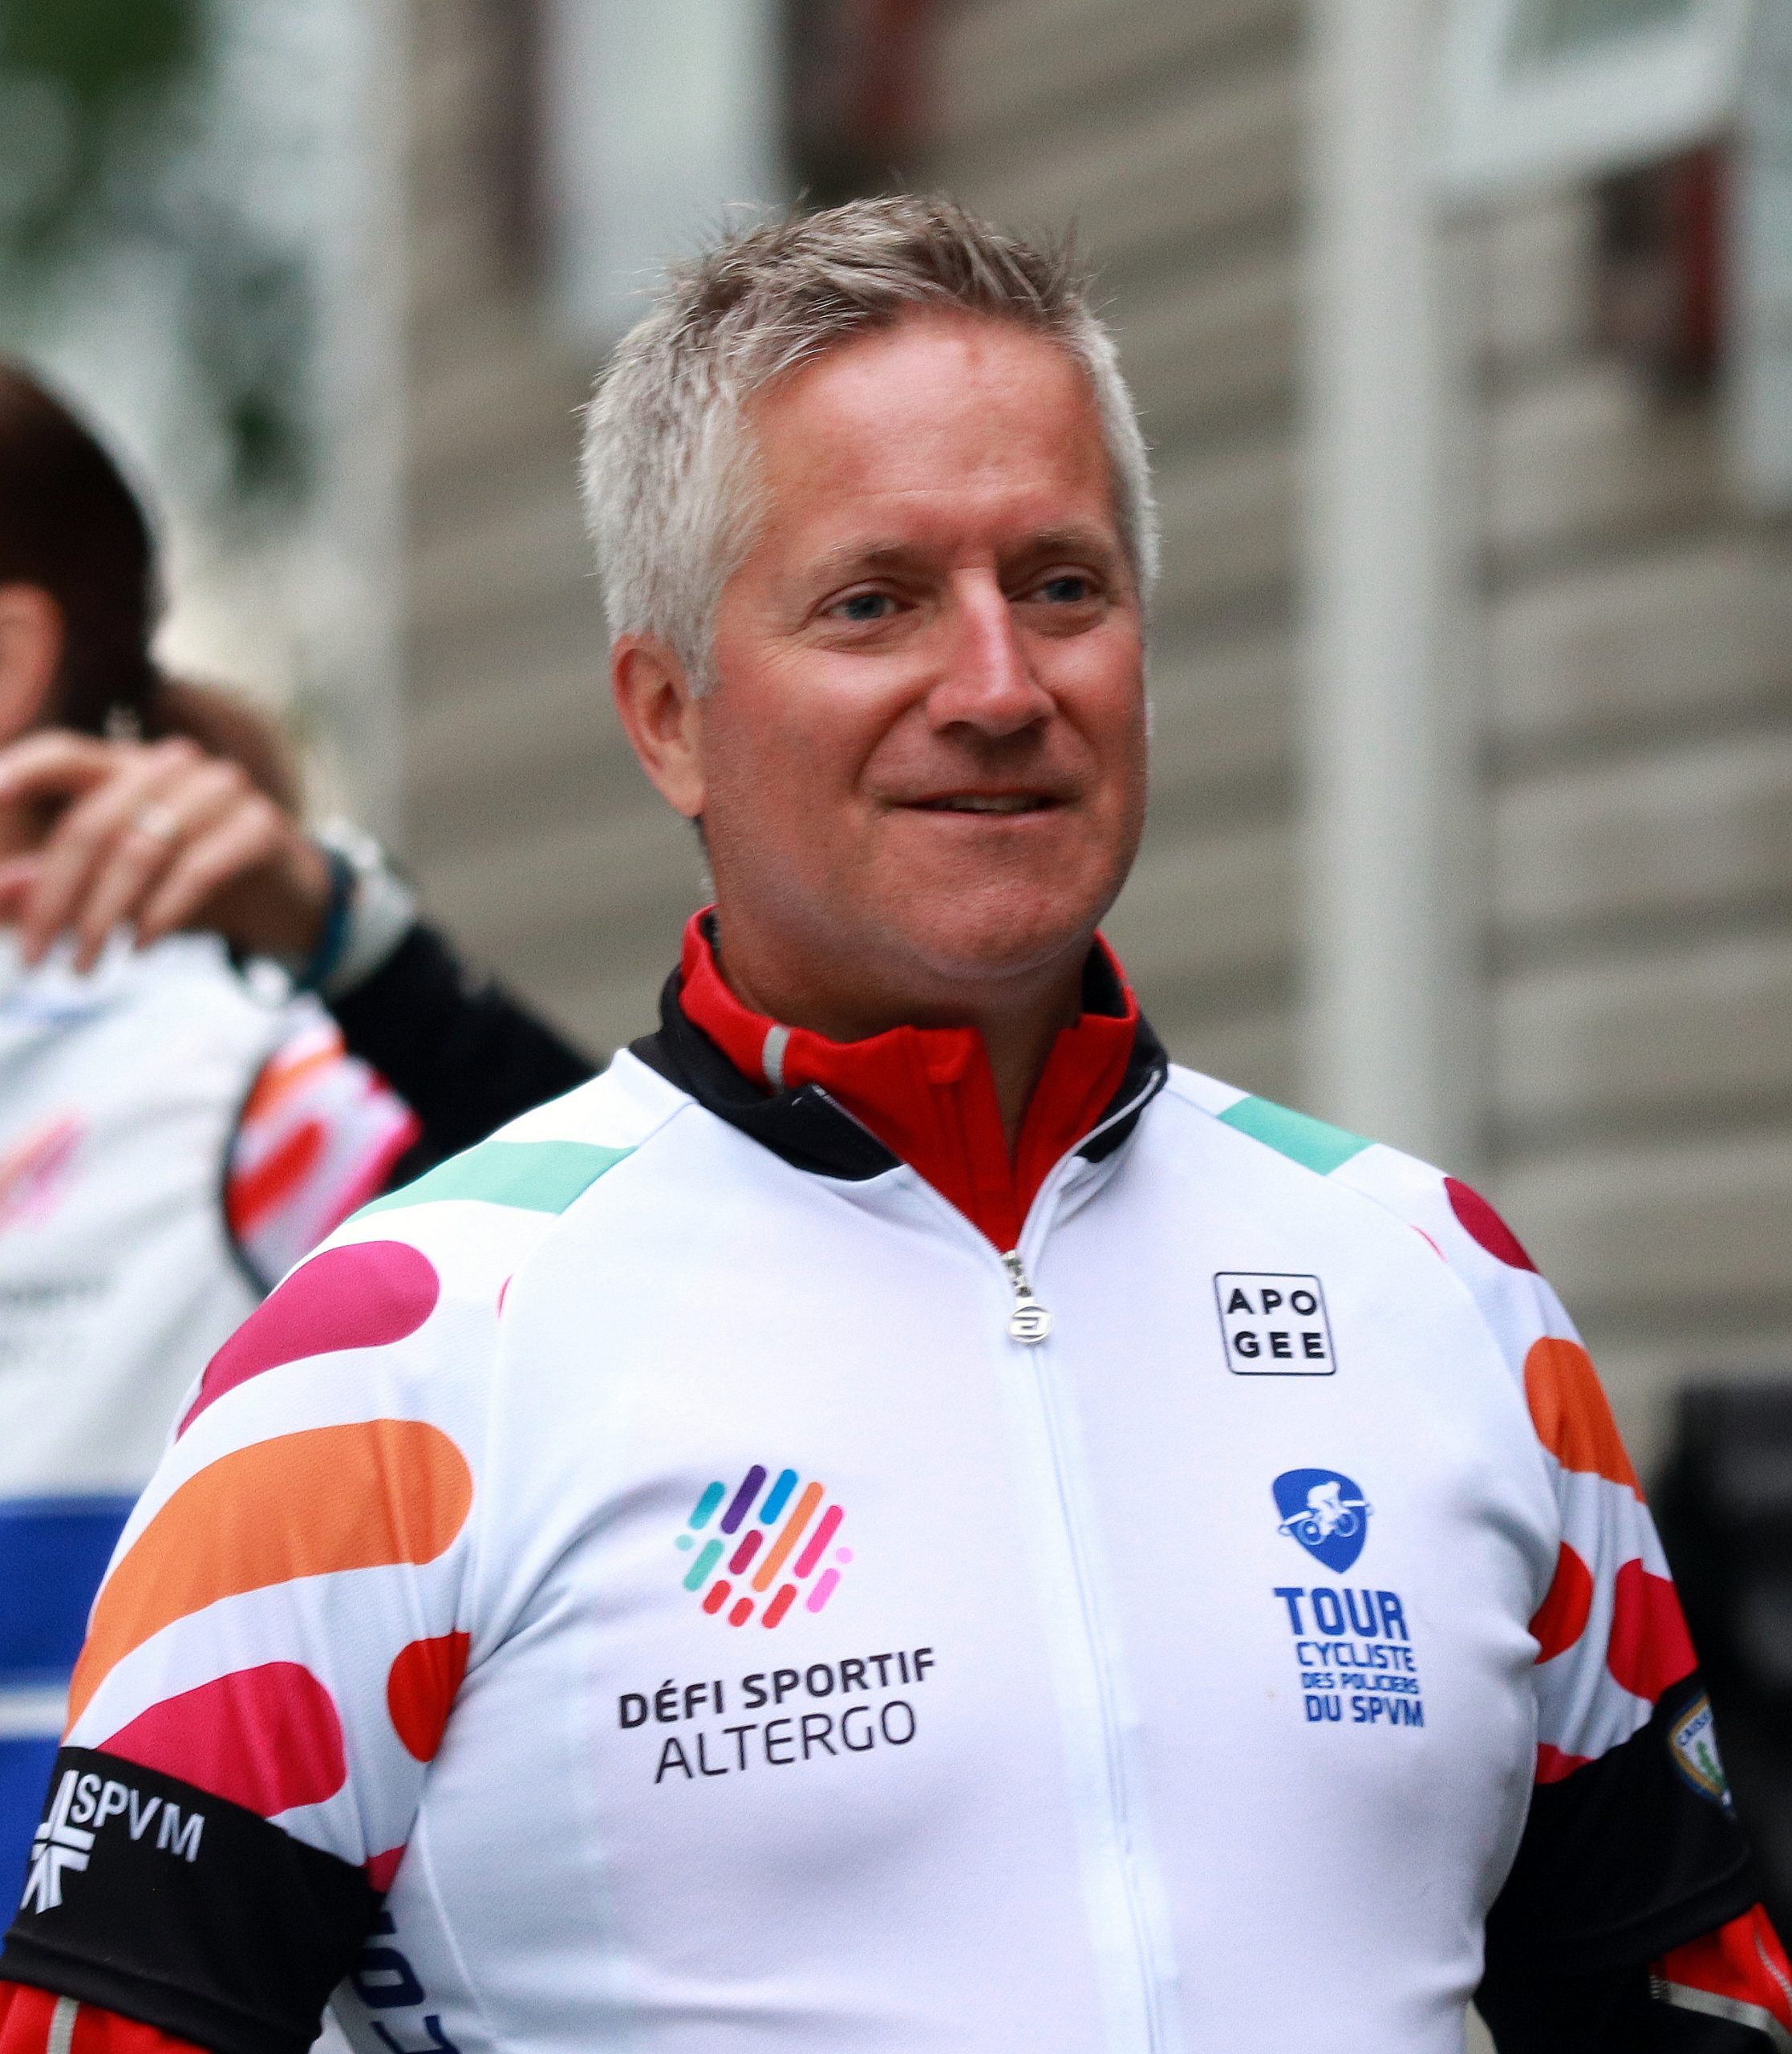 Lors du Tour cycliste des policiers du SPVM 2020, Martin Girard porte un maillot de cycliste aux couleurs du Défi sportif AlterGo.Martin Girard porte un maillot de cycliste